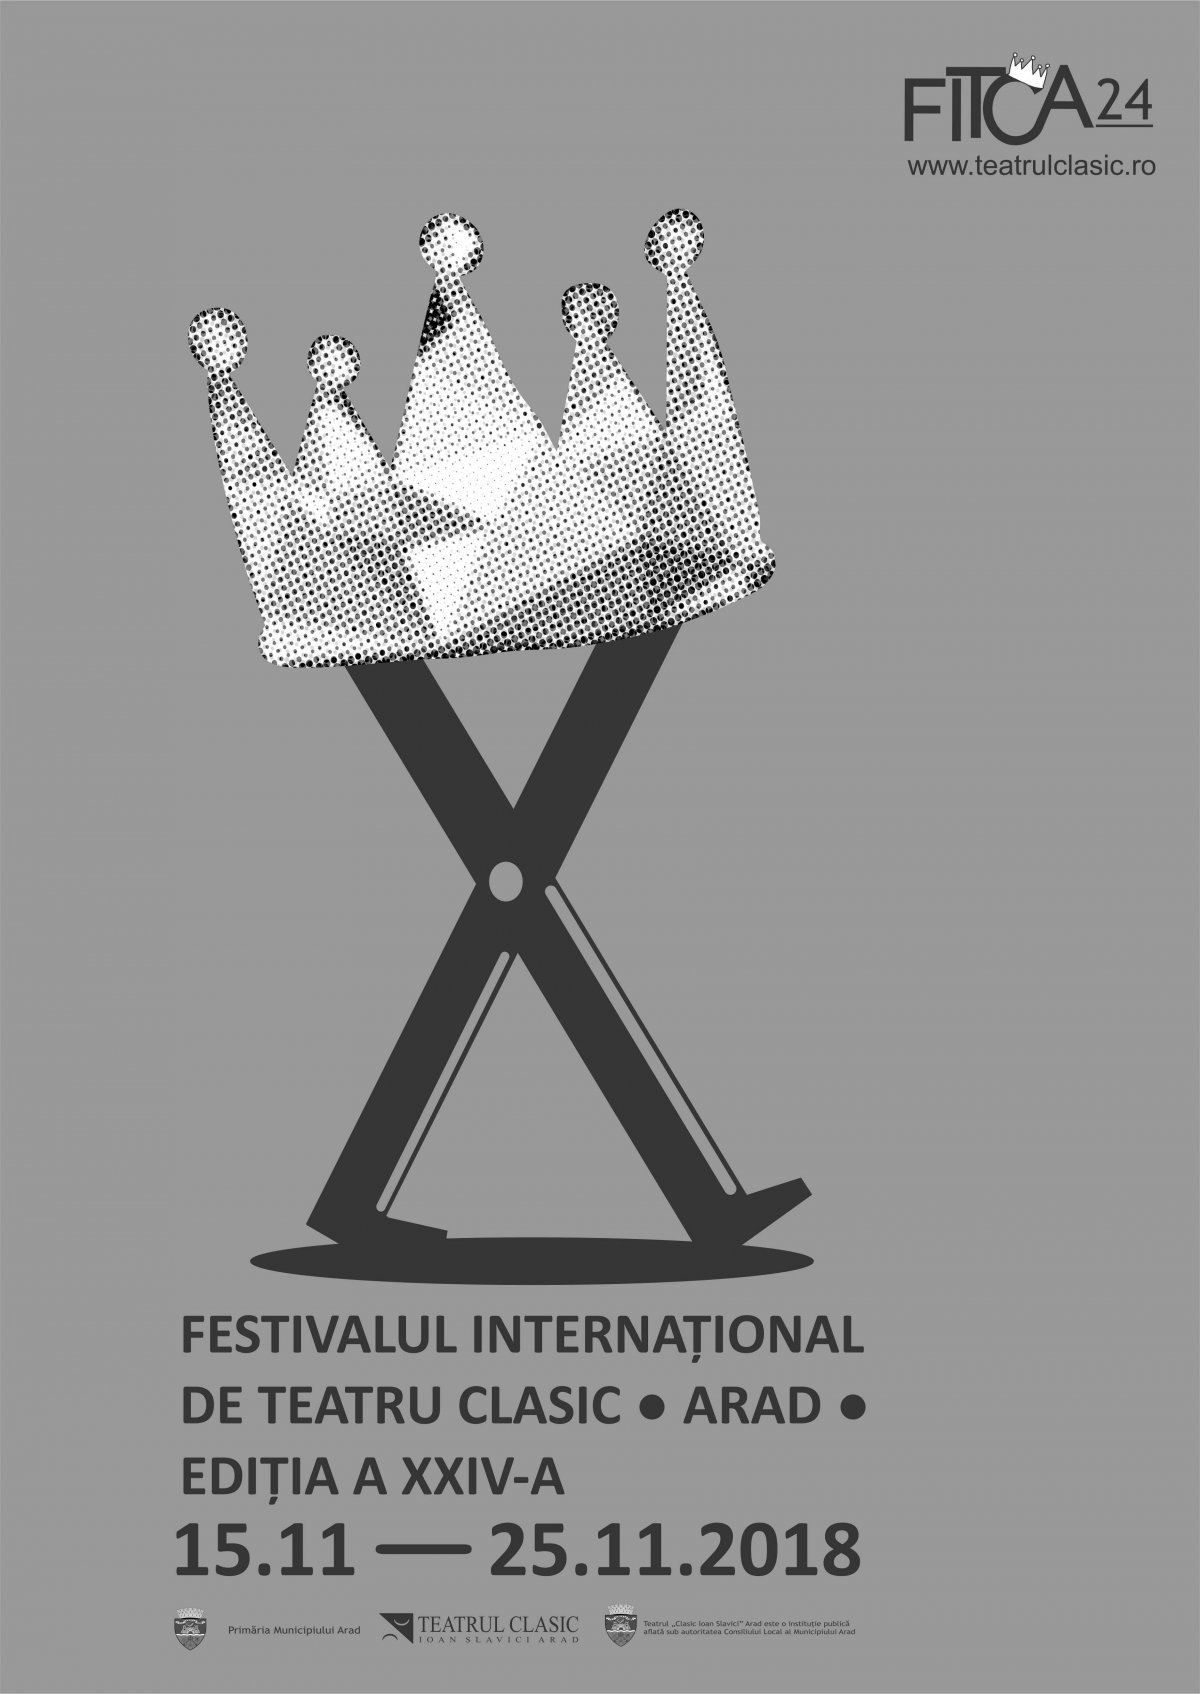 3,2,1.... se pun în vânzare biletele pentru Festivalul Internațional de Teatru Clasic, Arad 2018